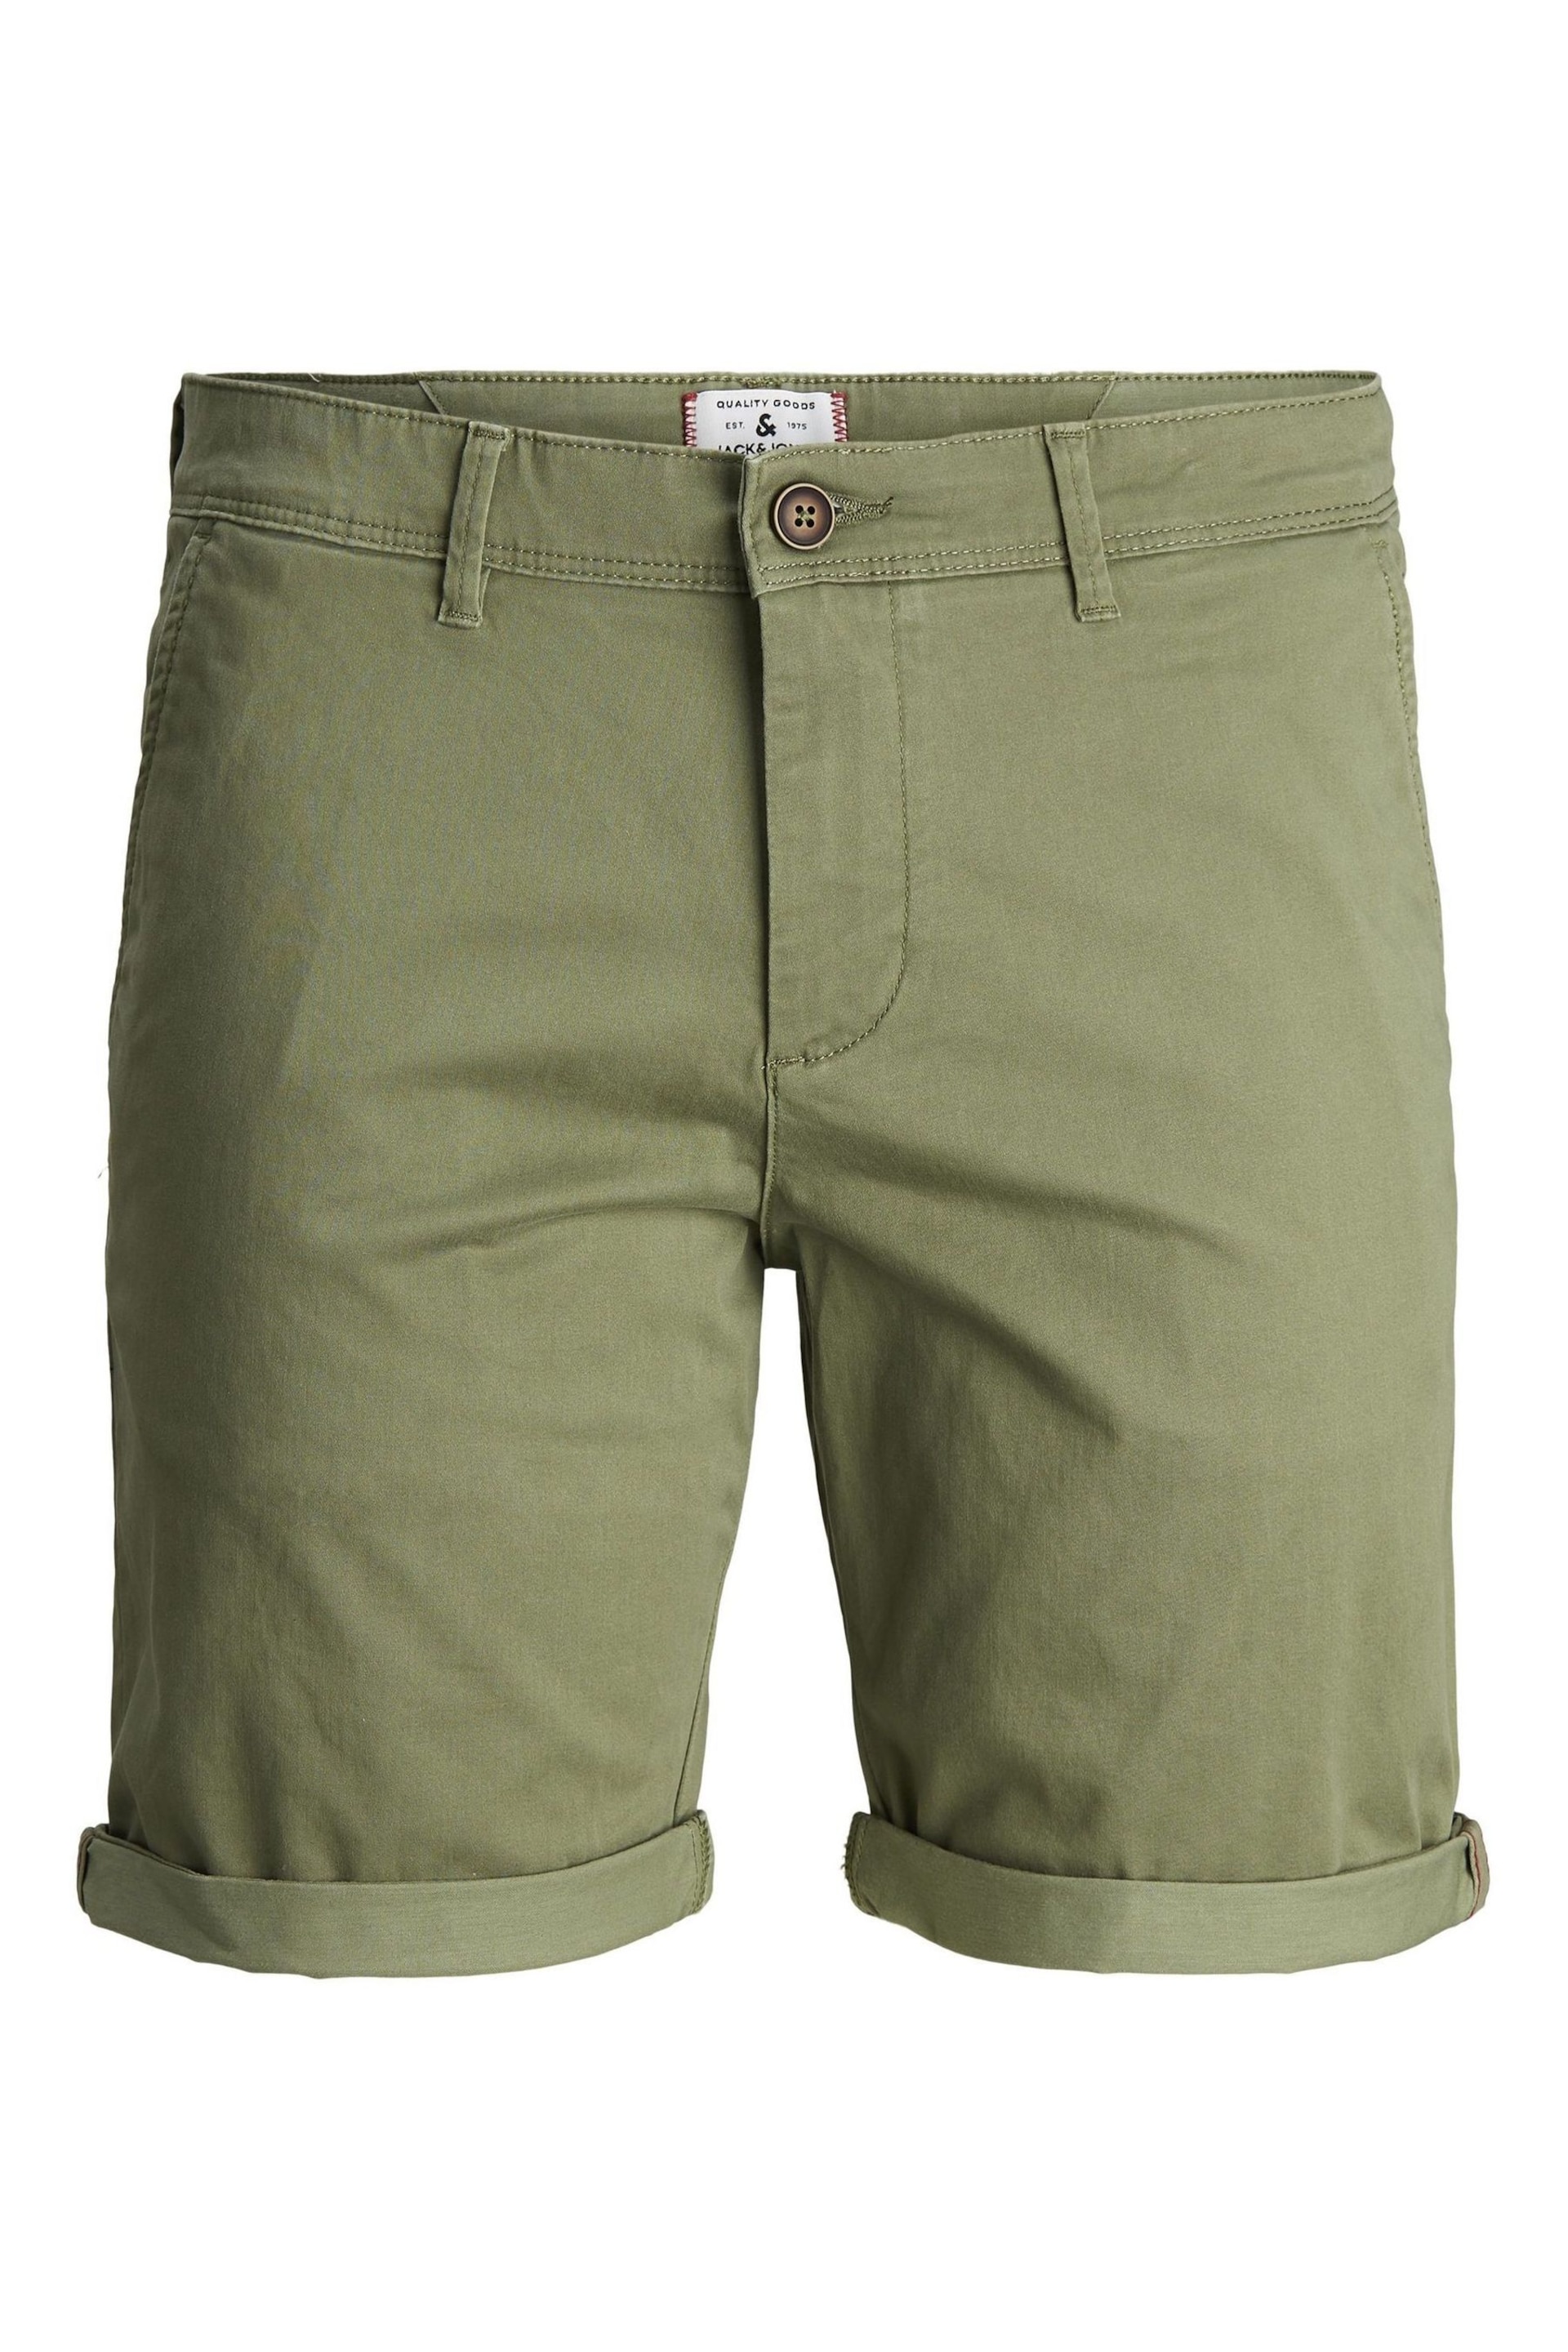 JACK & JONES Green Slim Chino Shorts - Image 6 of 7